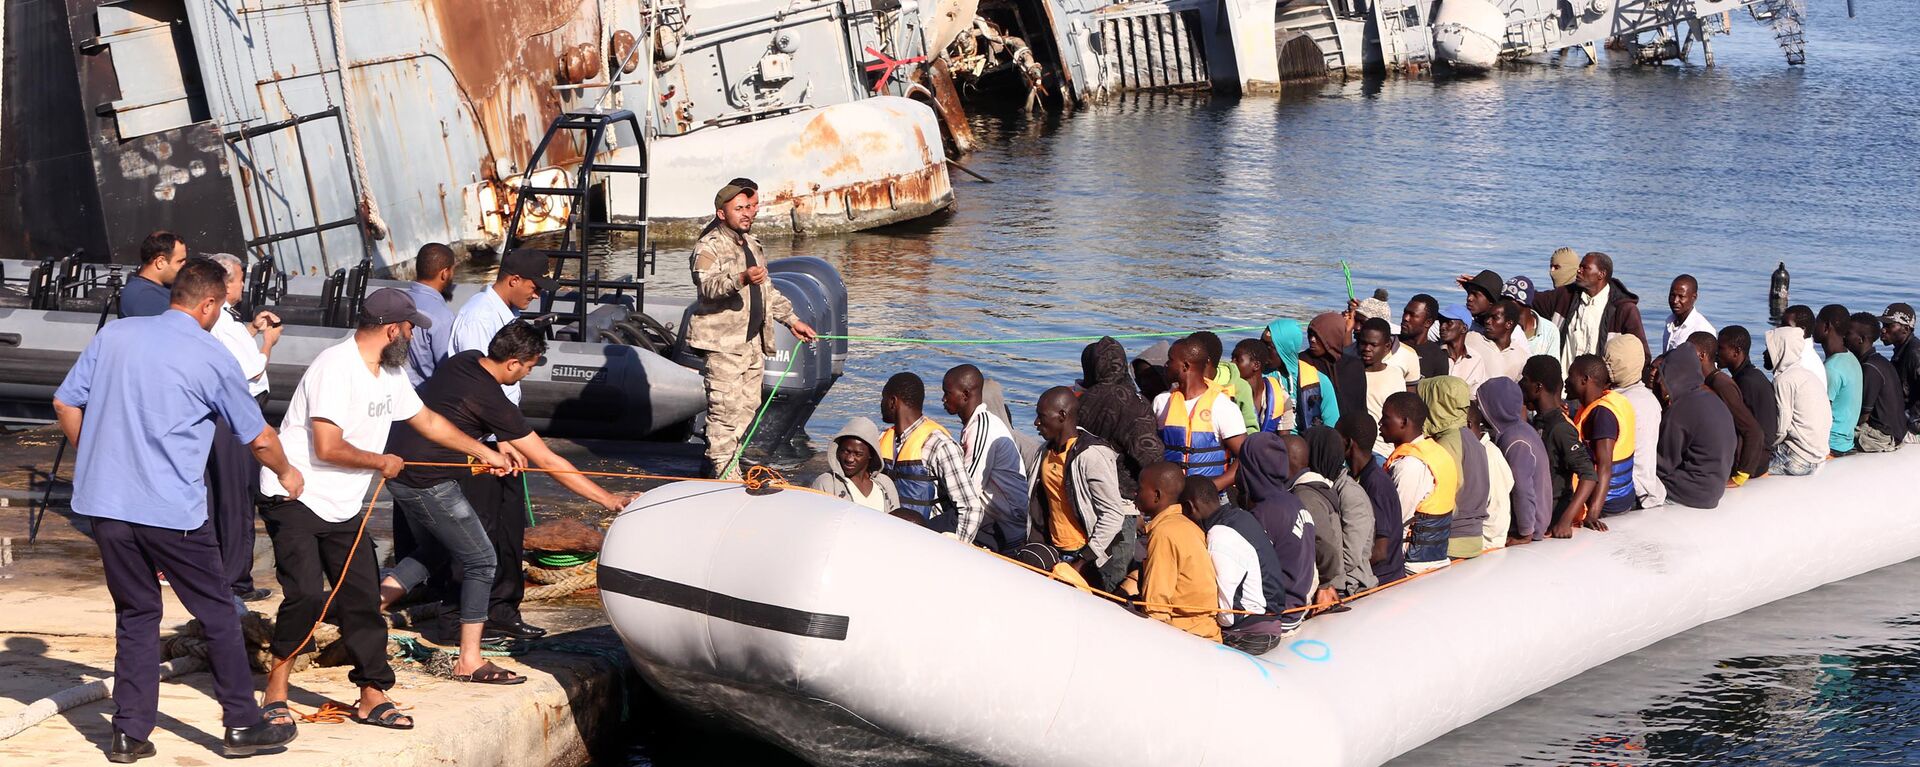  خفر السواحل الليبي يقوم بسحب قارب يحمل مهاجرين أفارقة، تم إنقاذهم أثناء محاولتهم الوصول إلى أوروبا بطريقة غير شرعية، في قاعدة بحرية بالقرب من العاصمة طرابلس في 29 سبتمبر/ أيلول 2015. - سبوتنيك عربي, 1920, 25.07.2023